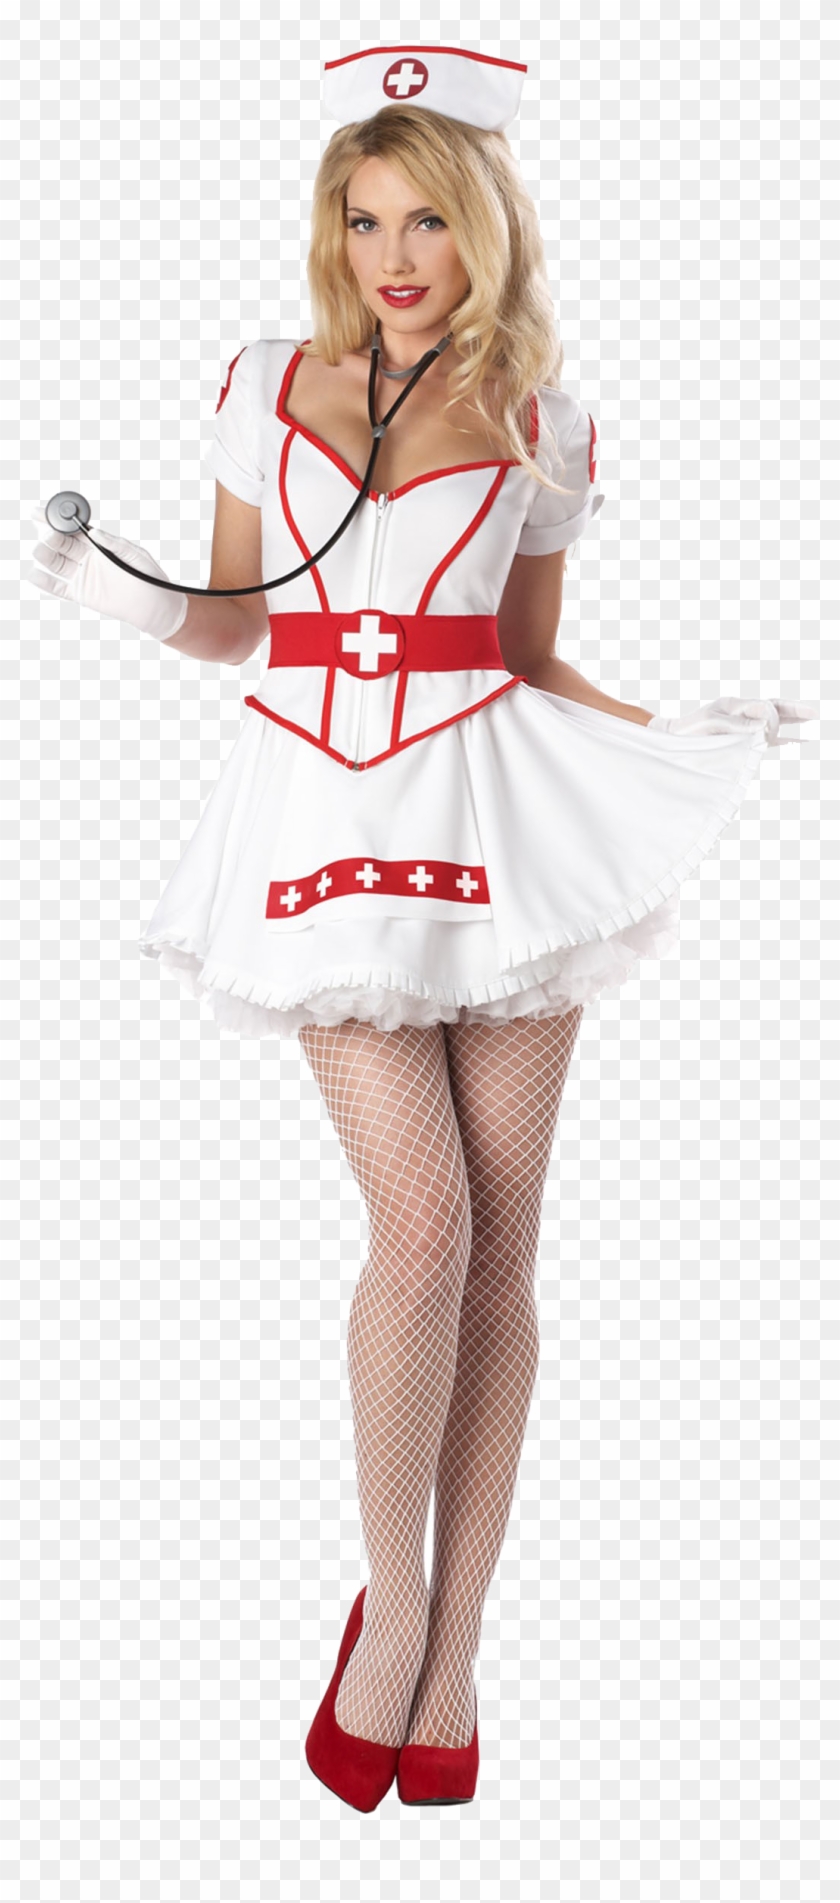 Enfermera - Disfraz De Enfermera Sexy Clipart #4928994